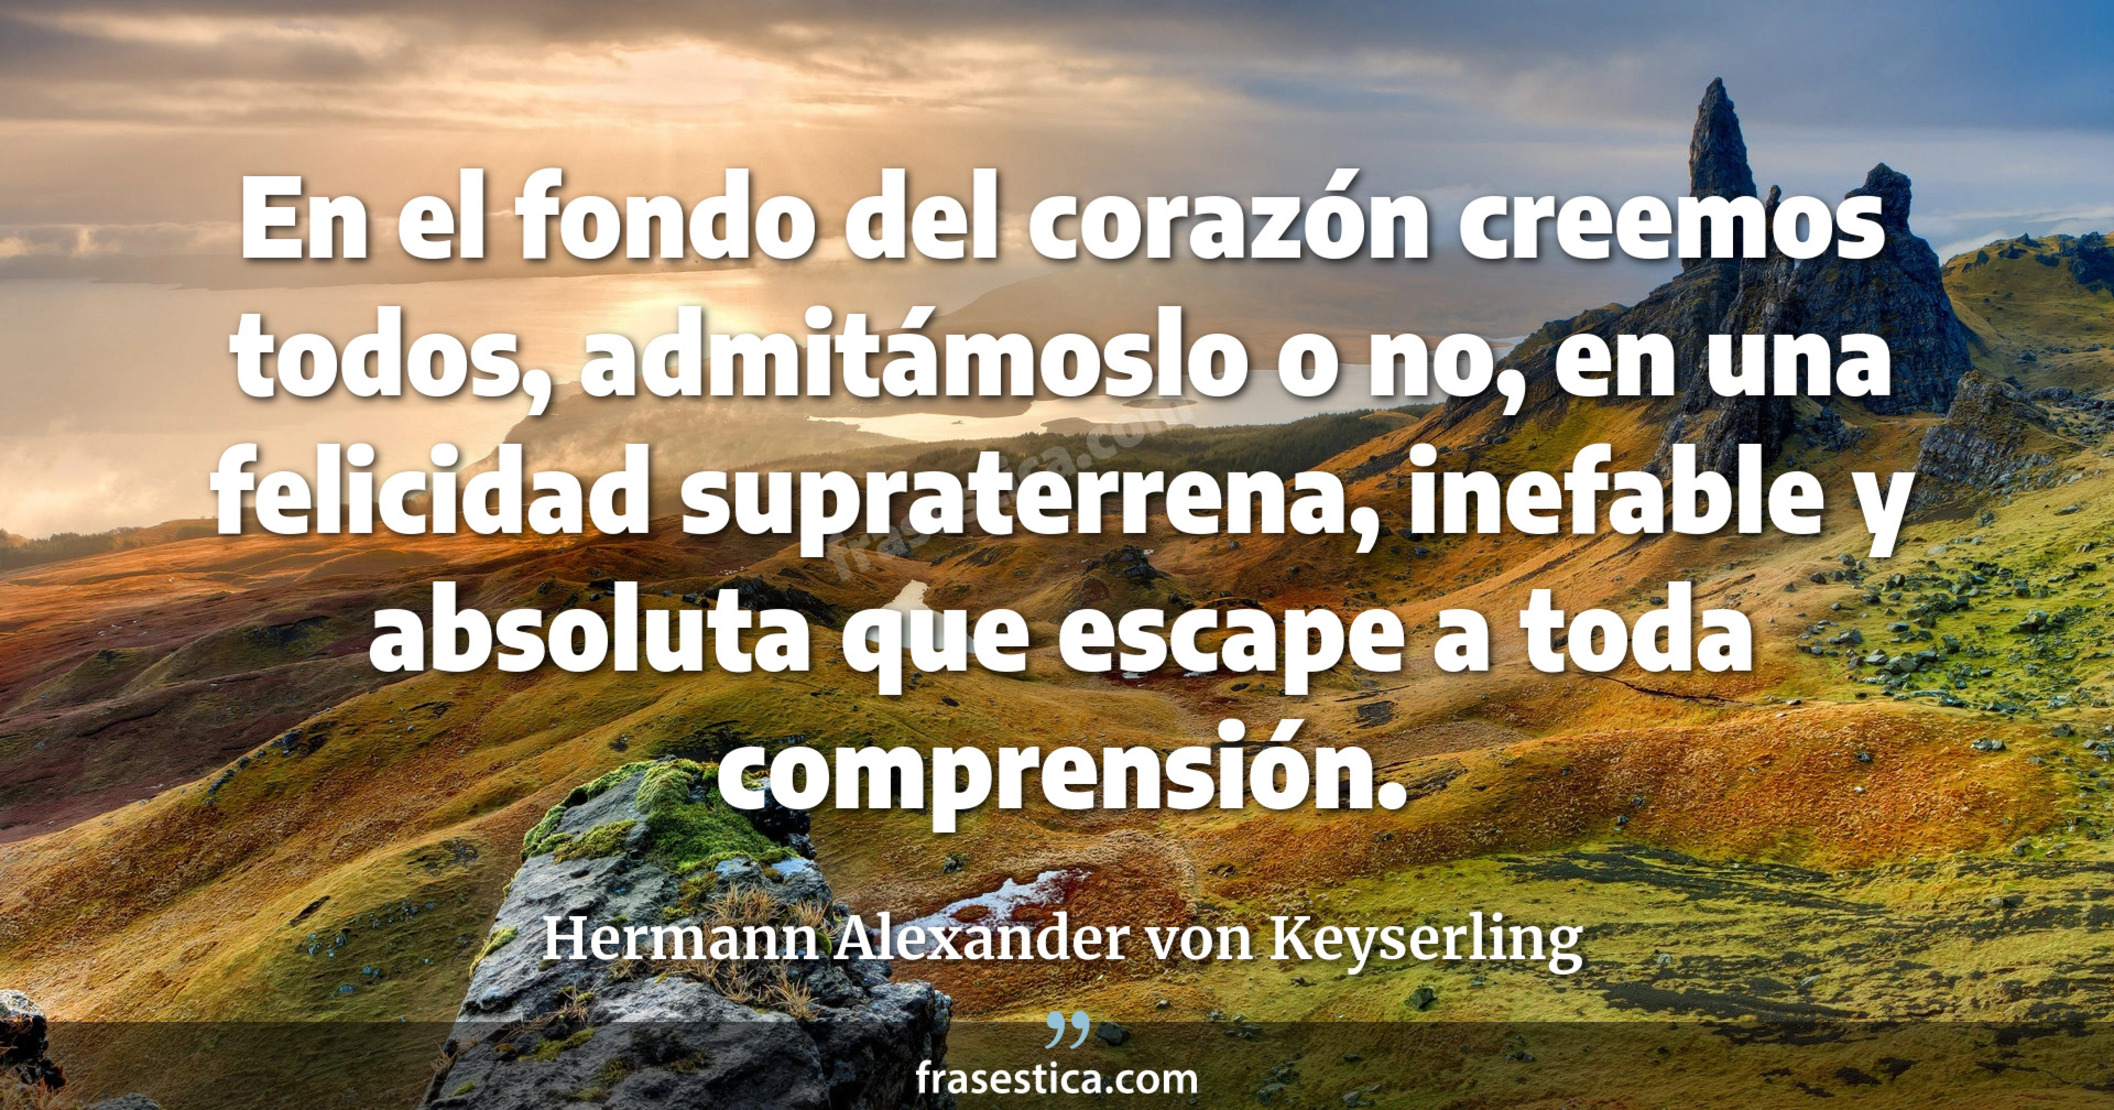 En el fondo del corazón creemos todos, admitámoslo o no, en una felicidad supraterrena, inefable y absoluta que escape a toda comprensión. - Hermann Alexander von Keyserling